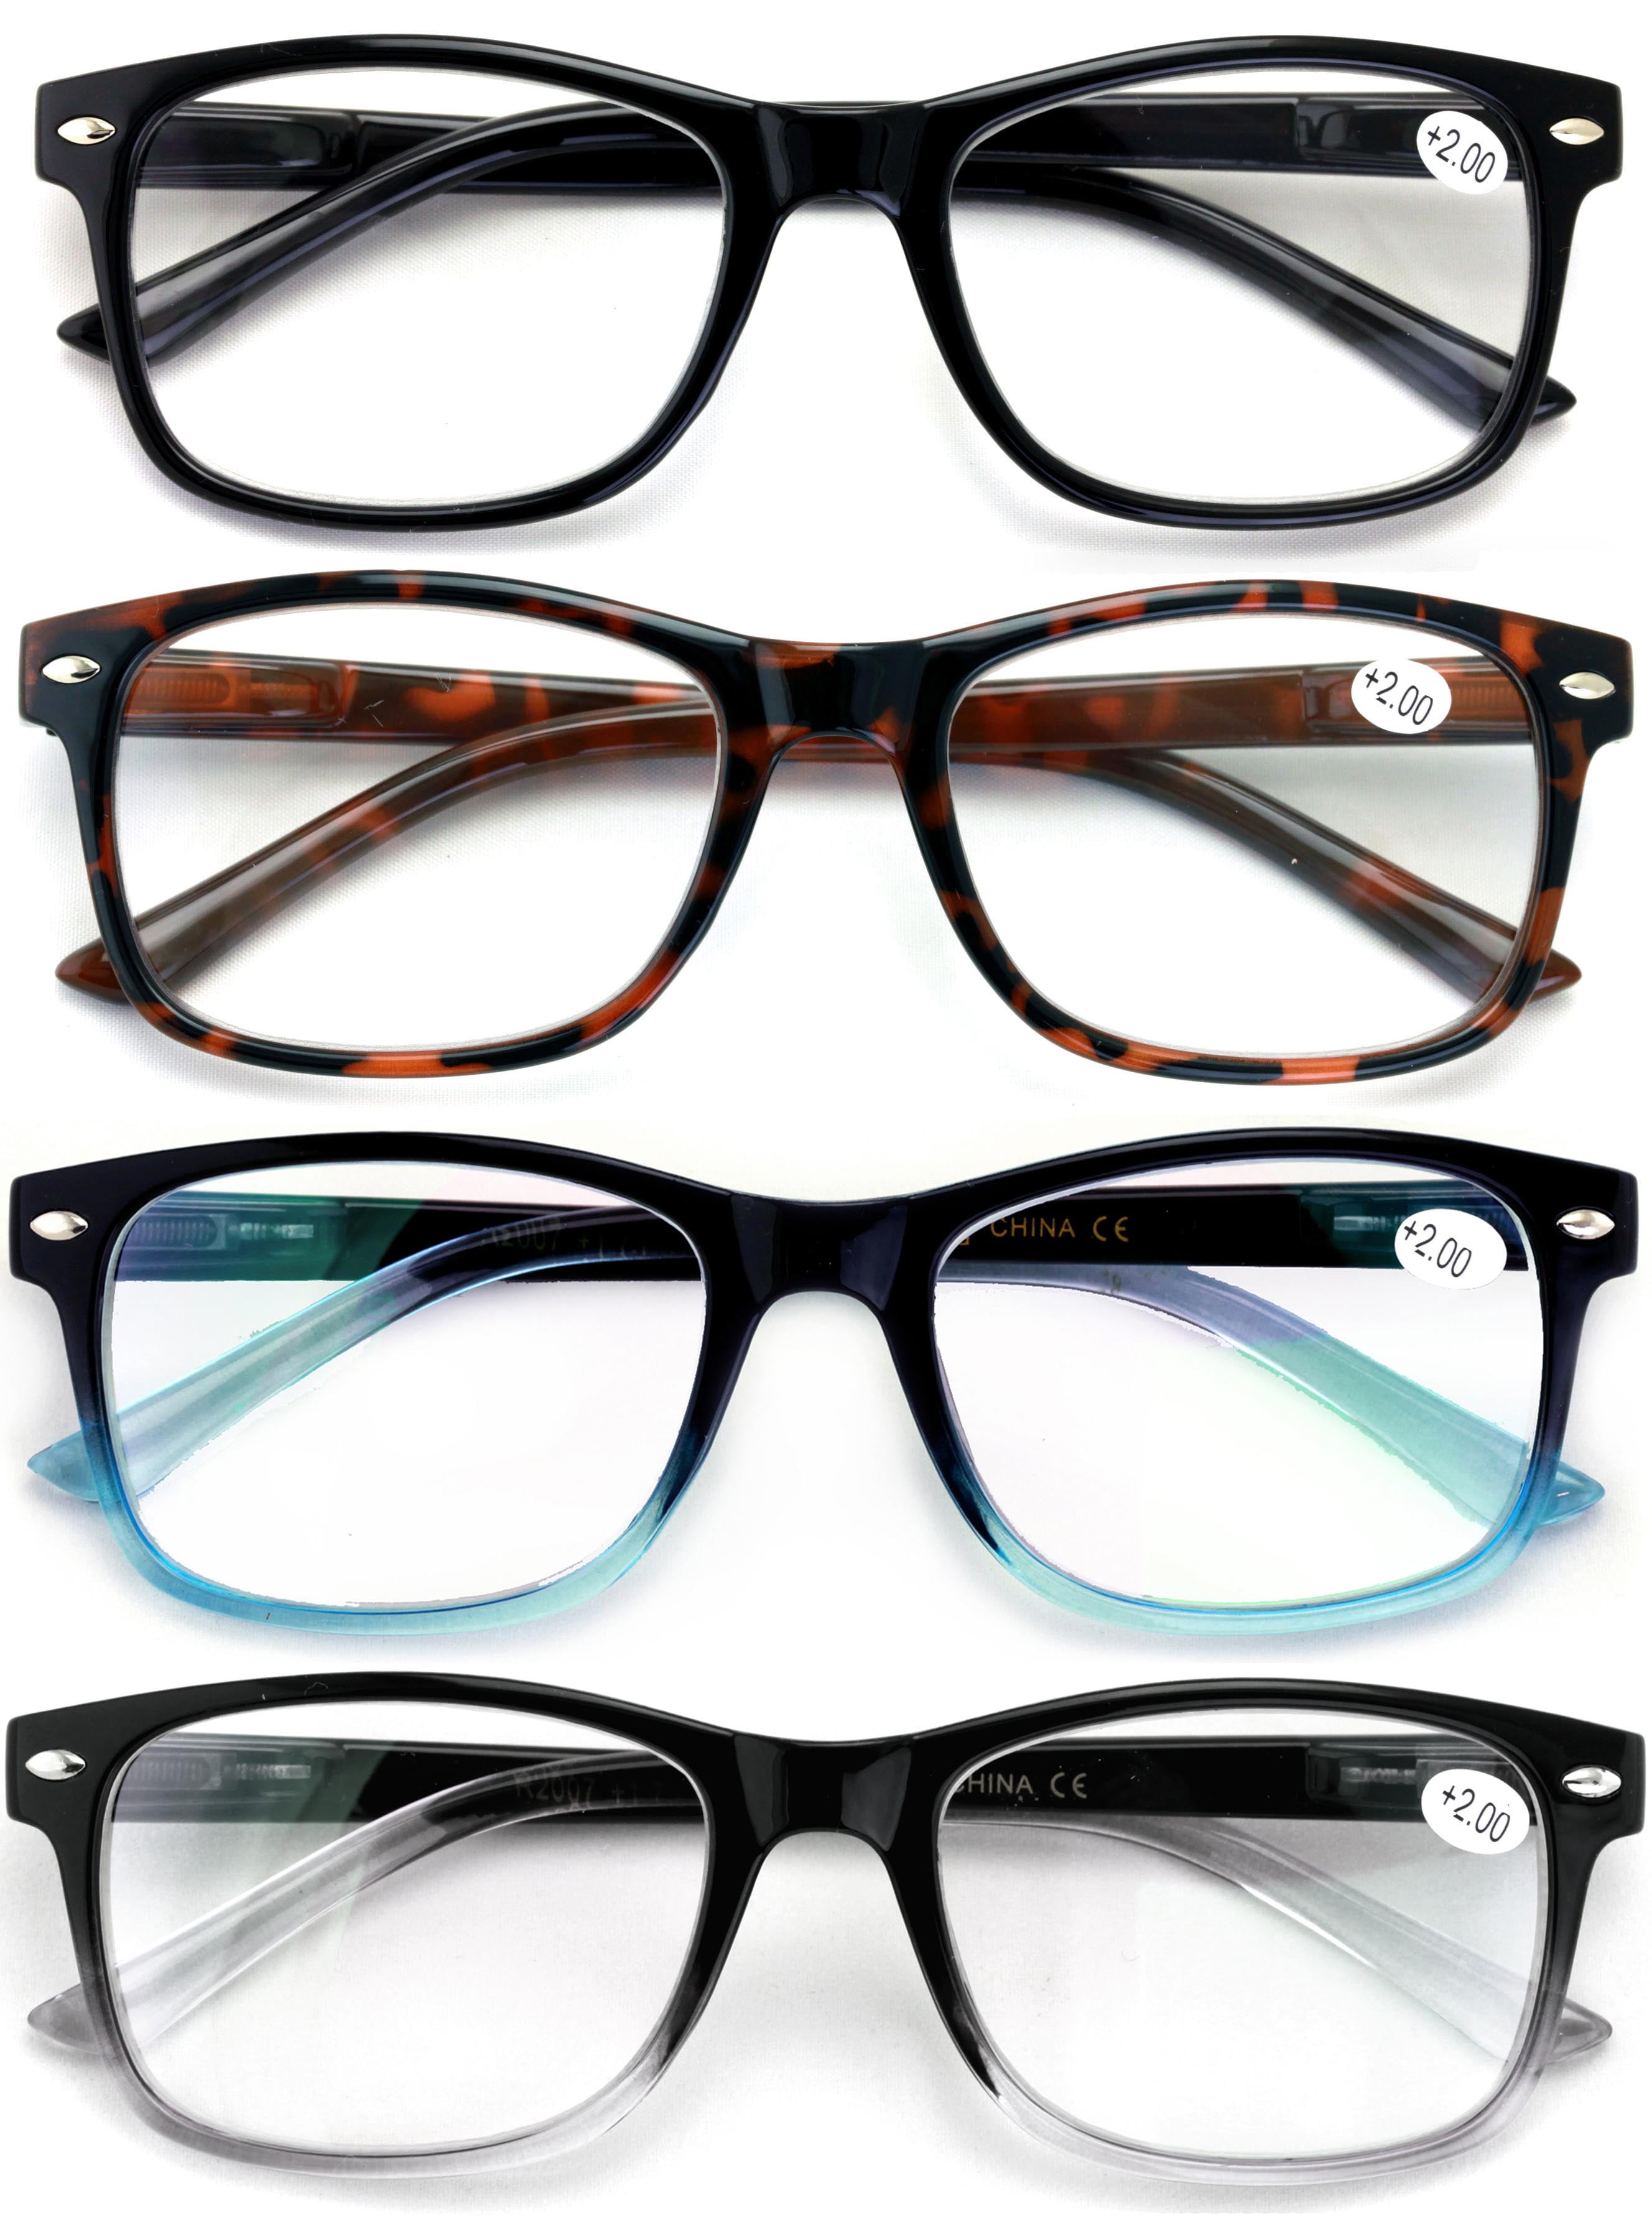 Blue Light Blocking Reading Glasses 4 Pack Computer Readers for Women Men,Anti Glare UV Ray Filter Eyeglasses 